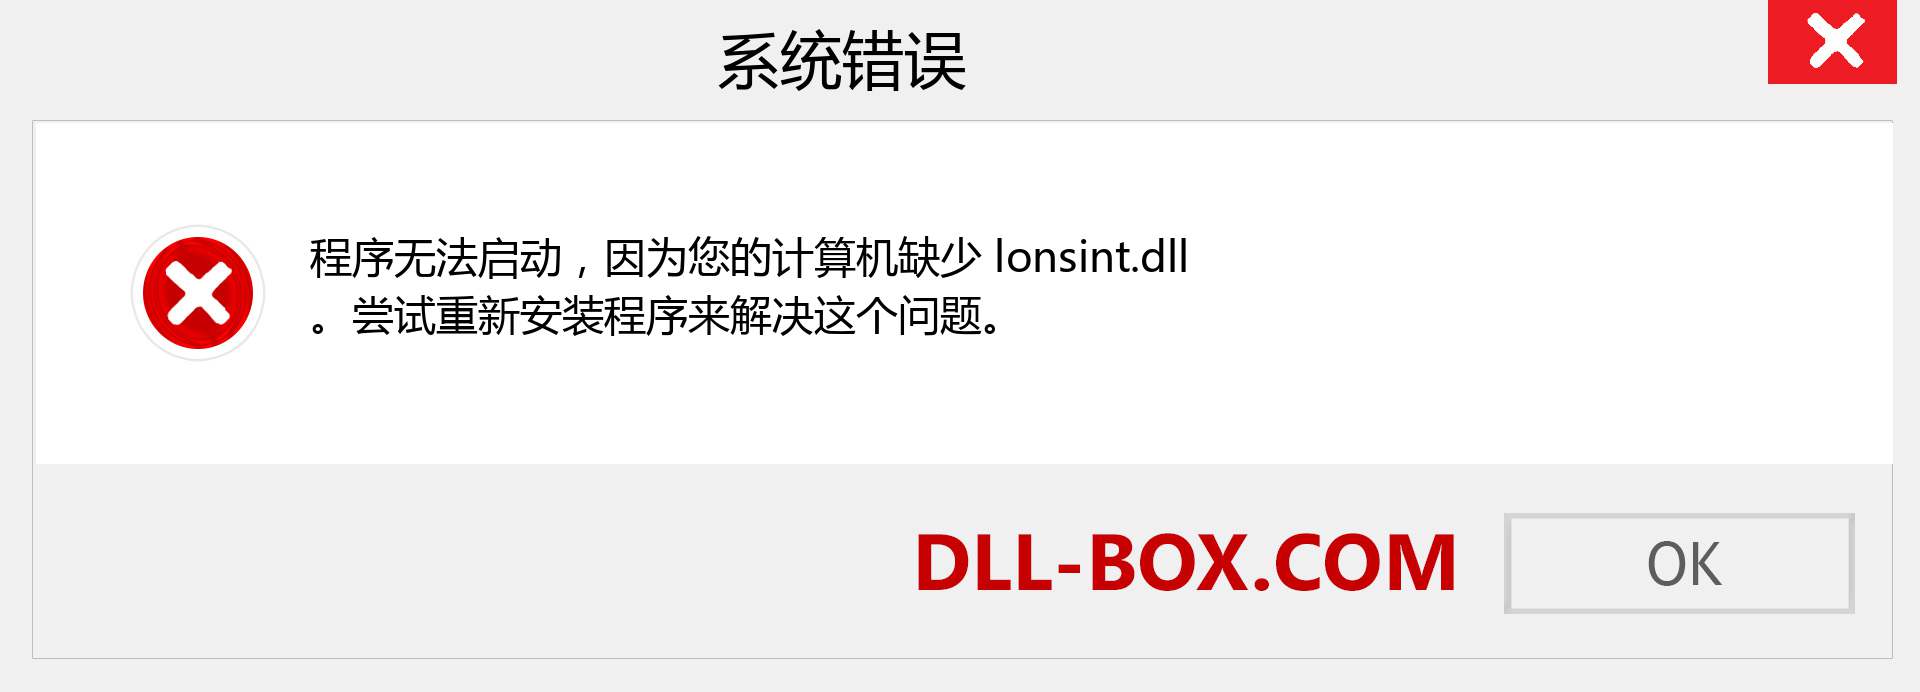 lonsint.dll 文件丢失？。 适用于 Windows 7、8、10 的下载 - 修复 Windows、照片、图像上的 lonsint dll 丢失错误